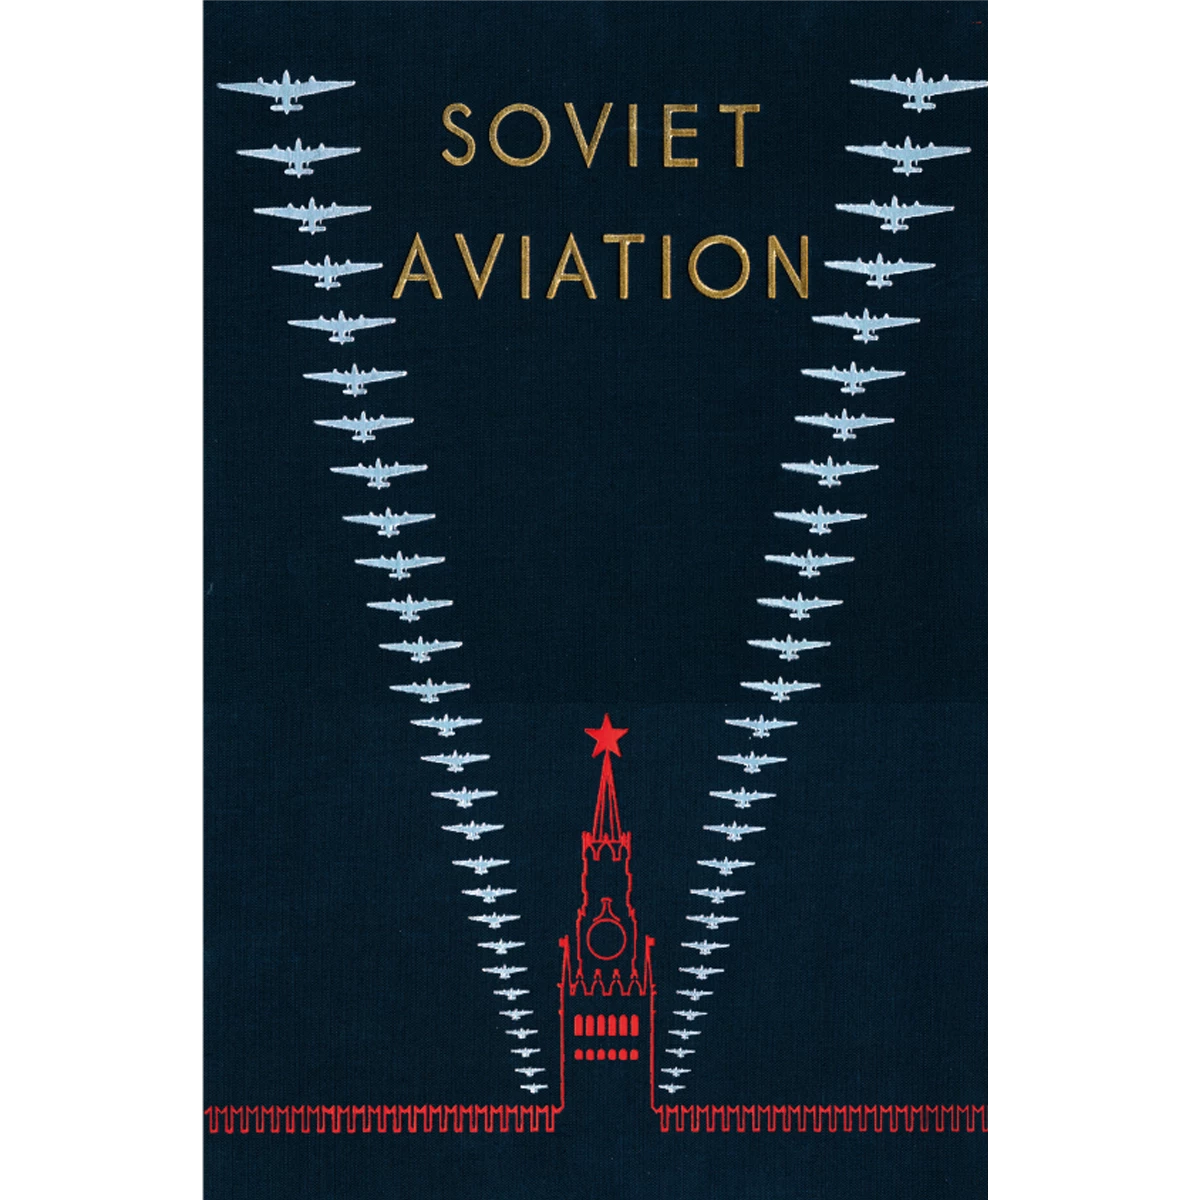 Soviet Aviation